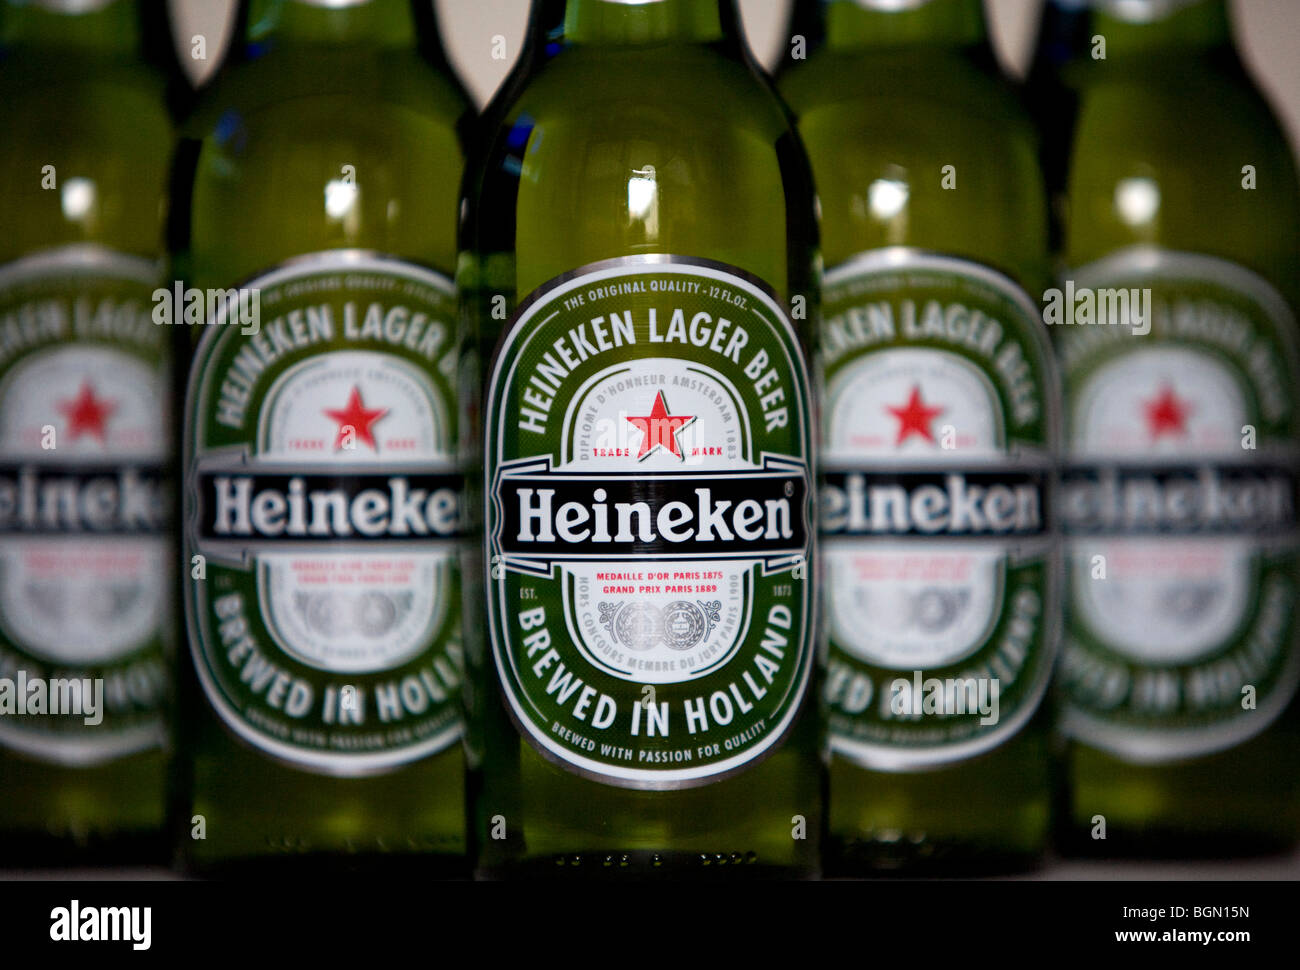 Heineken beer bottles.  Stock Photo